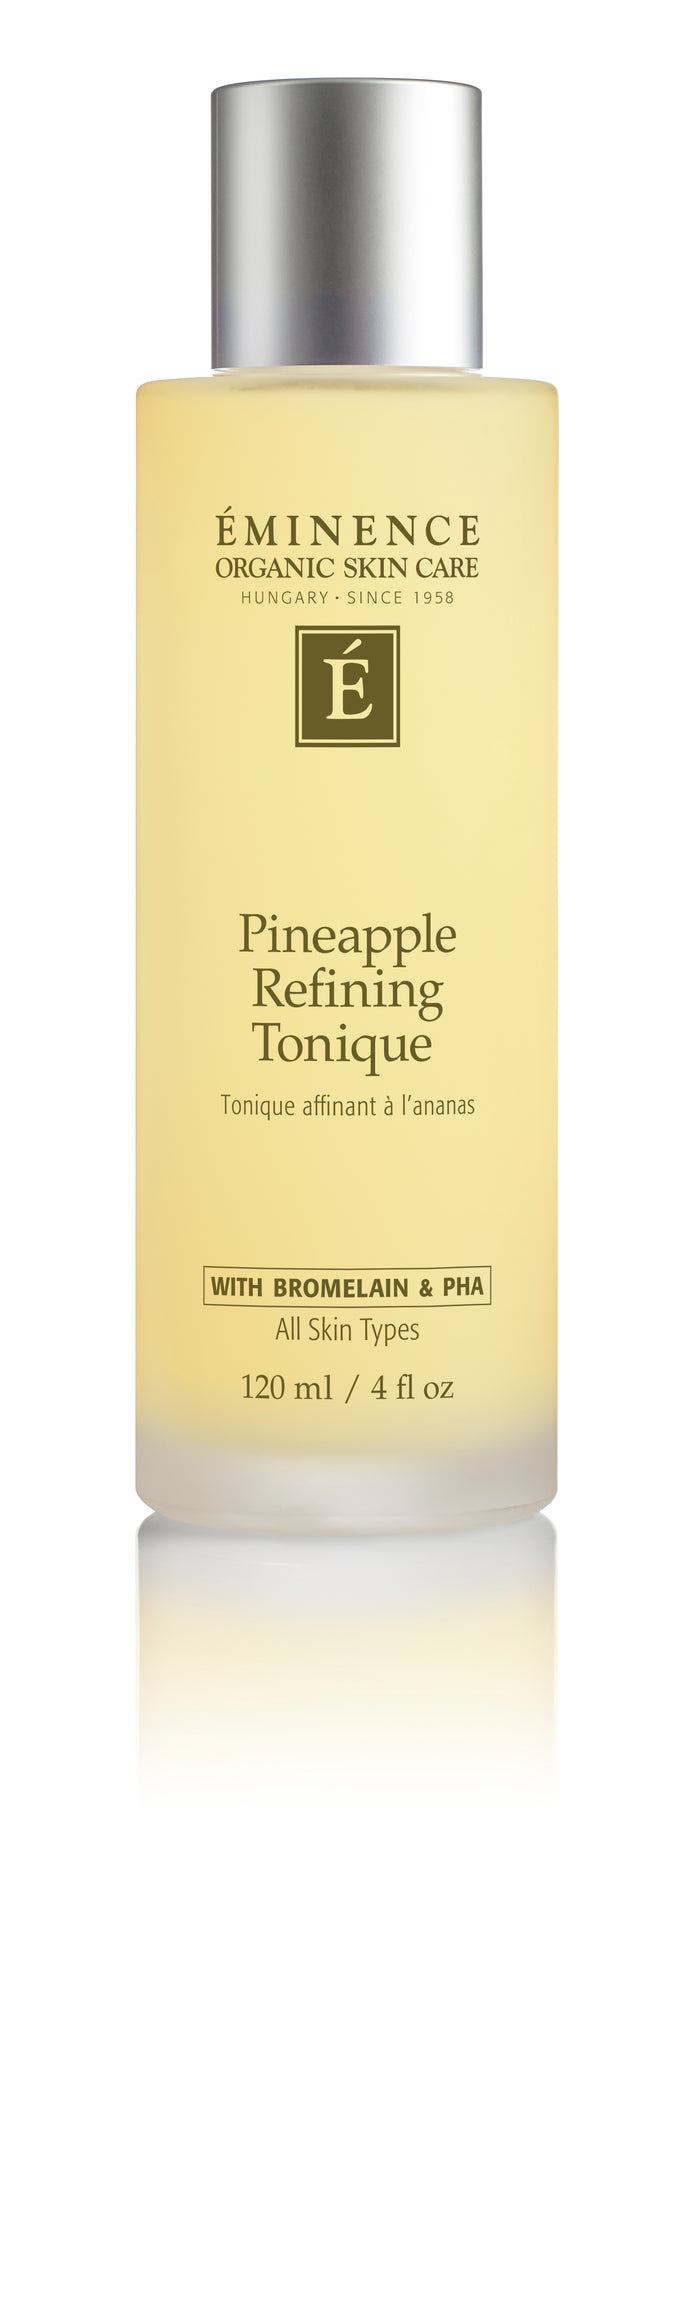 Pineapple Refining Tonique